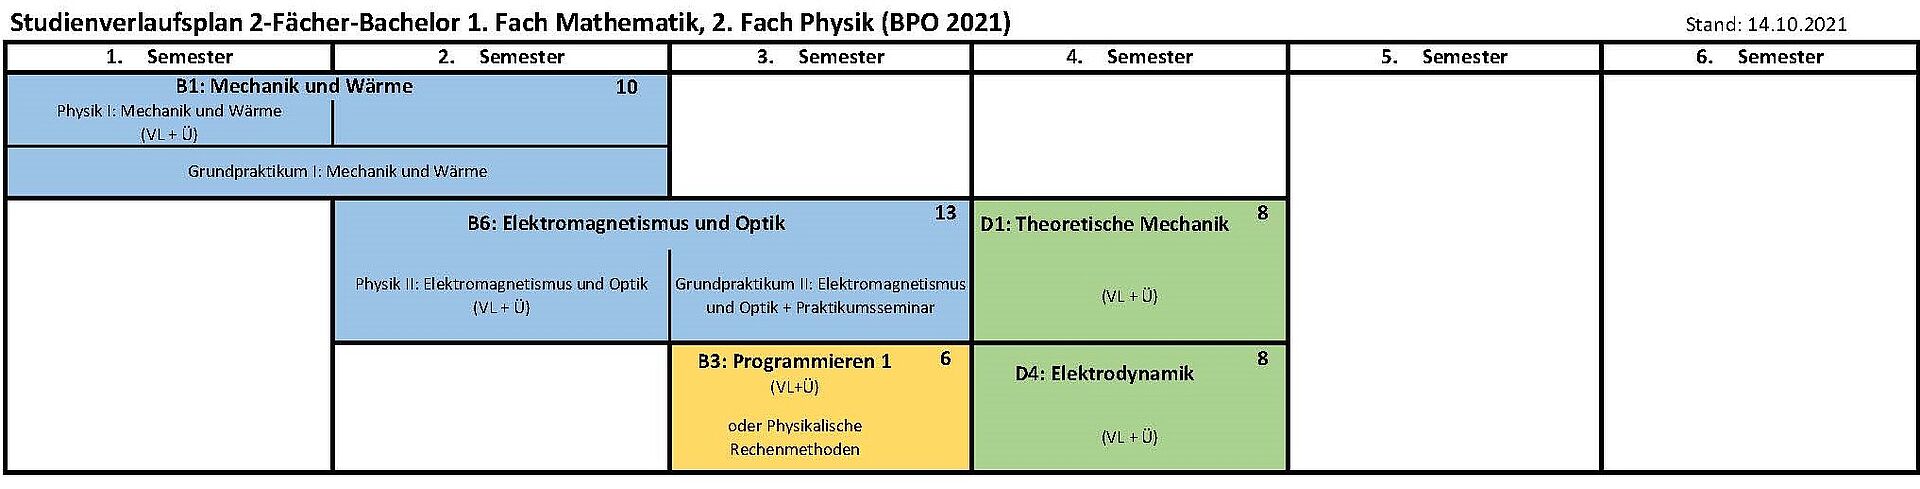 Musterstudienverlaufsplan 2-Fächer Bachelor 1. Fach Mathe, 2. Fach Physik (BPO 2021)